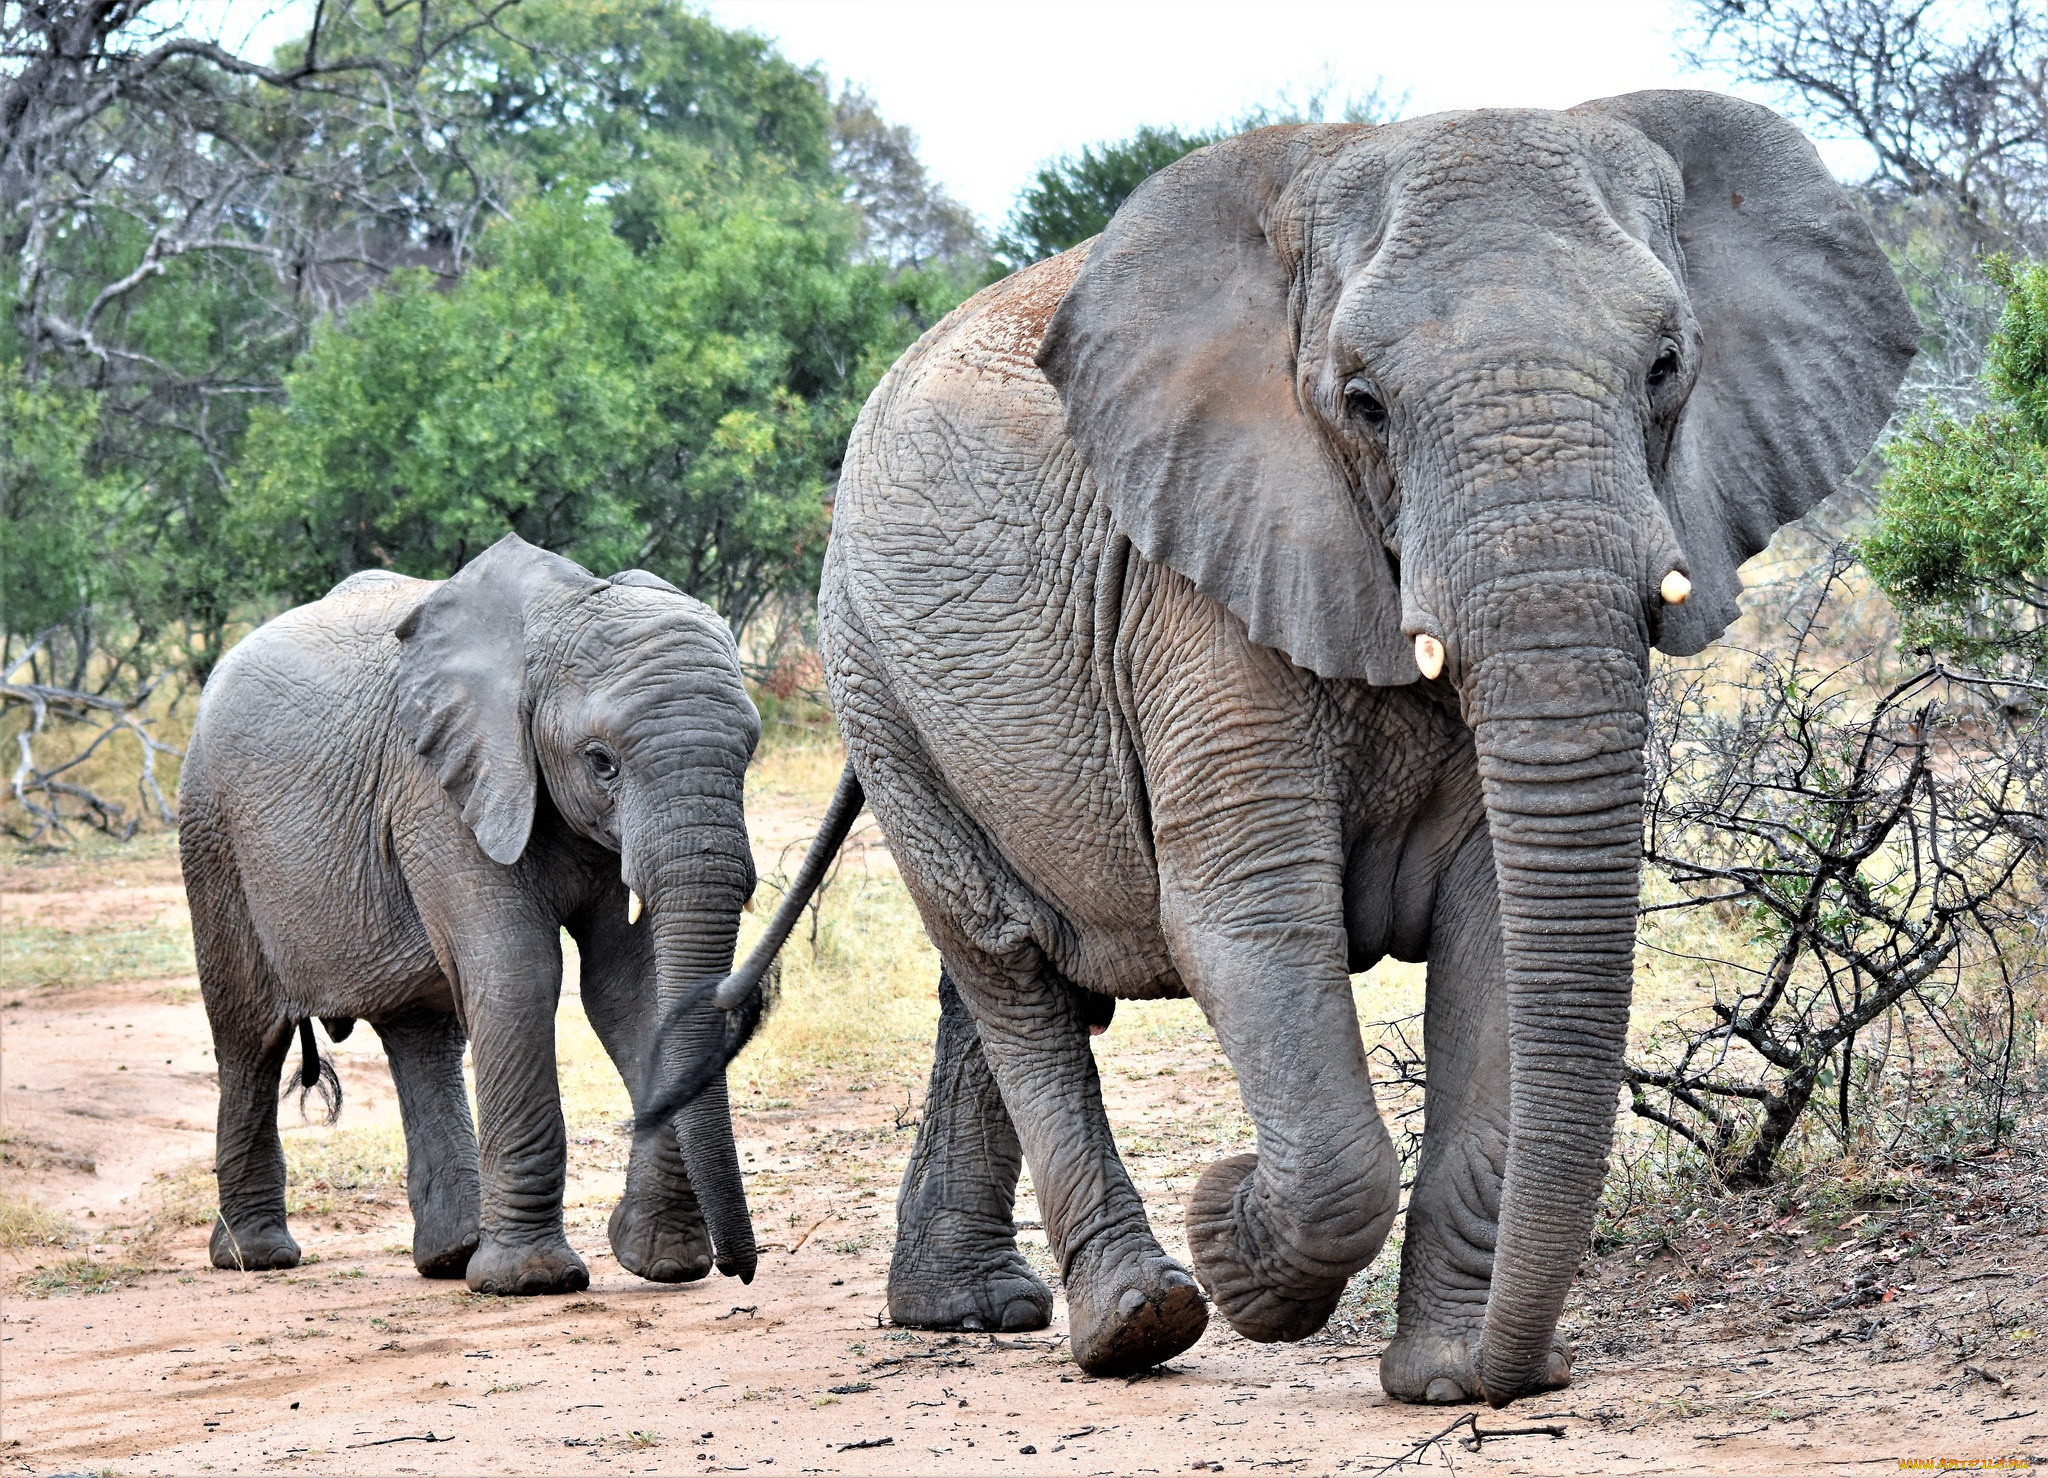 Elephant present. Слон слониха Слоненок. Слон-Слоненок-Слонята. Слониха со слоненком. Изображение слона.